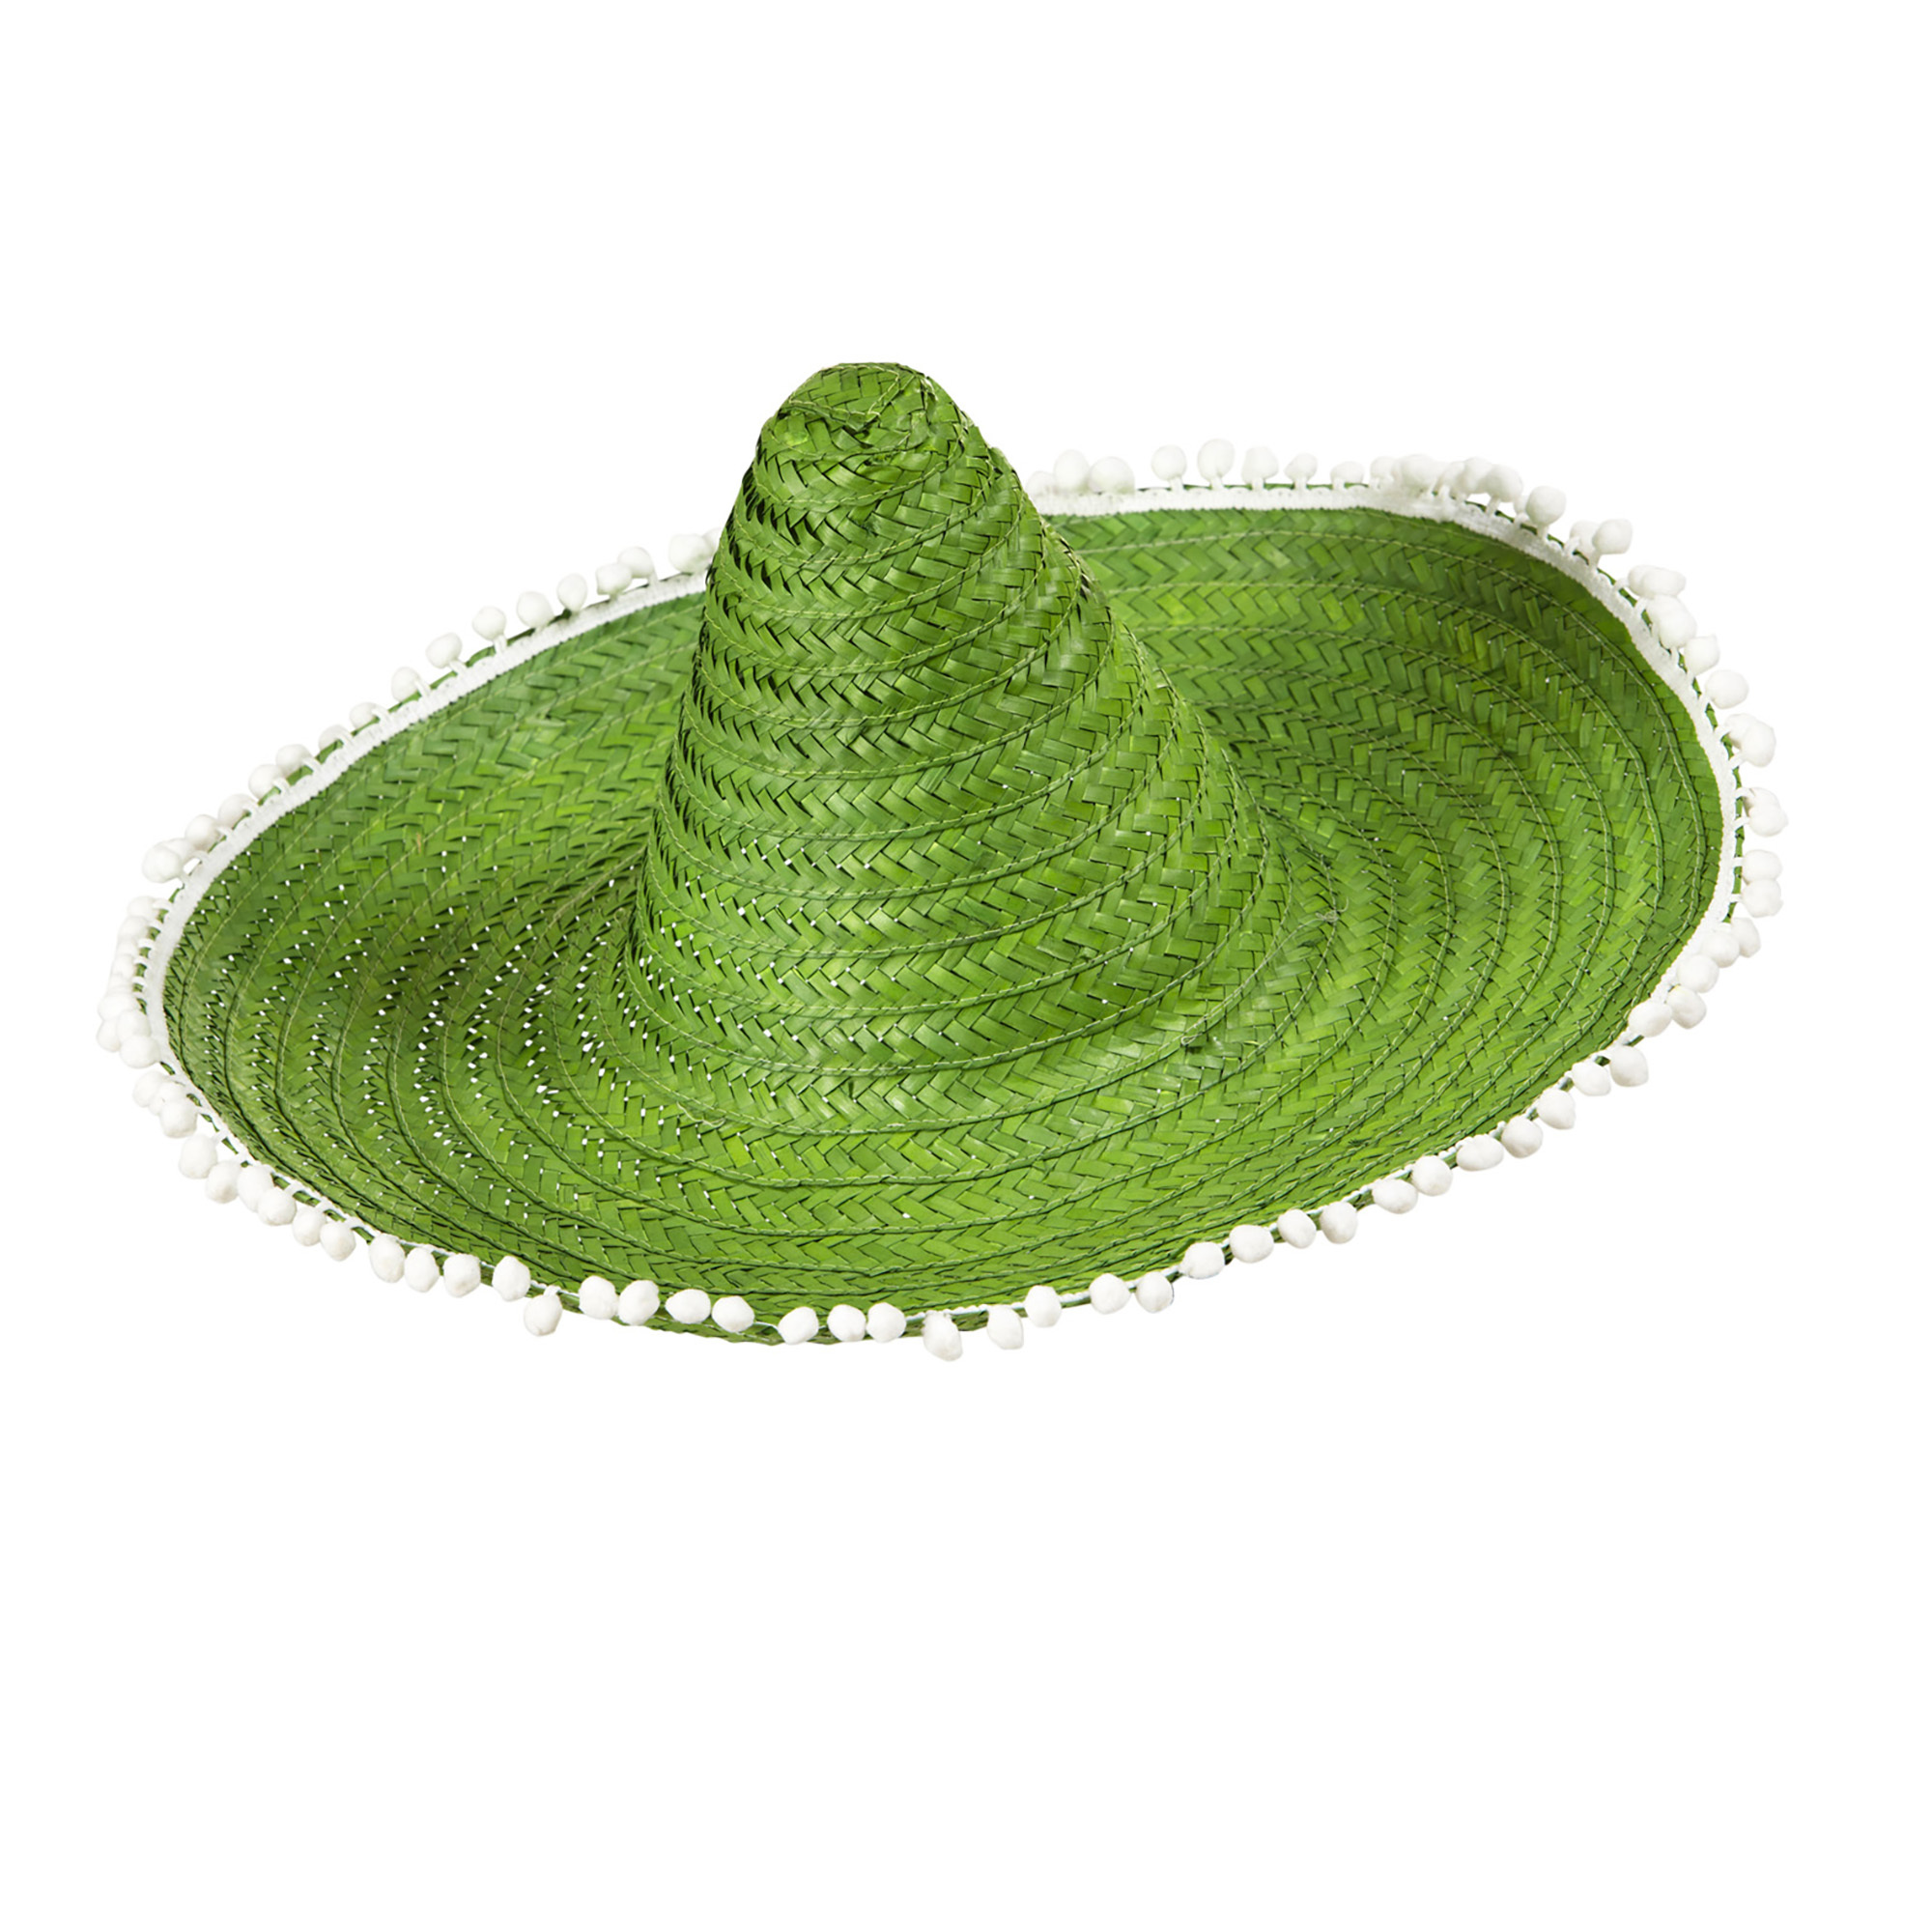 Sombrero groen 50cm met pom poms